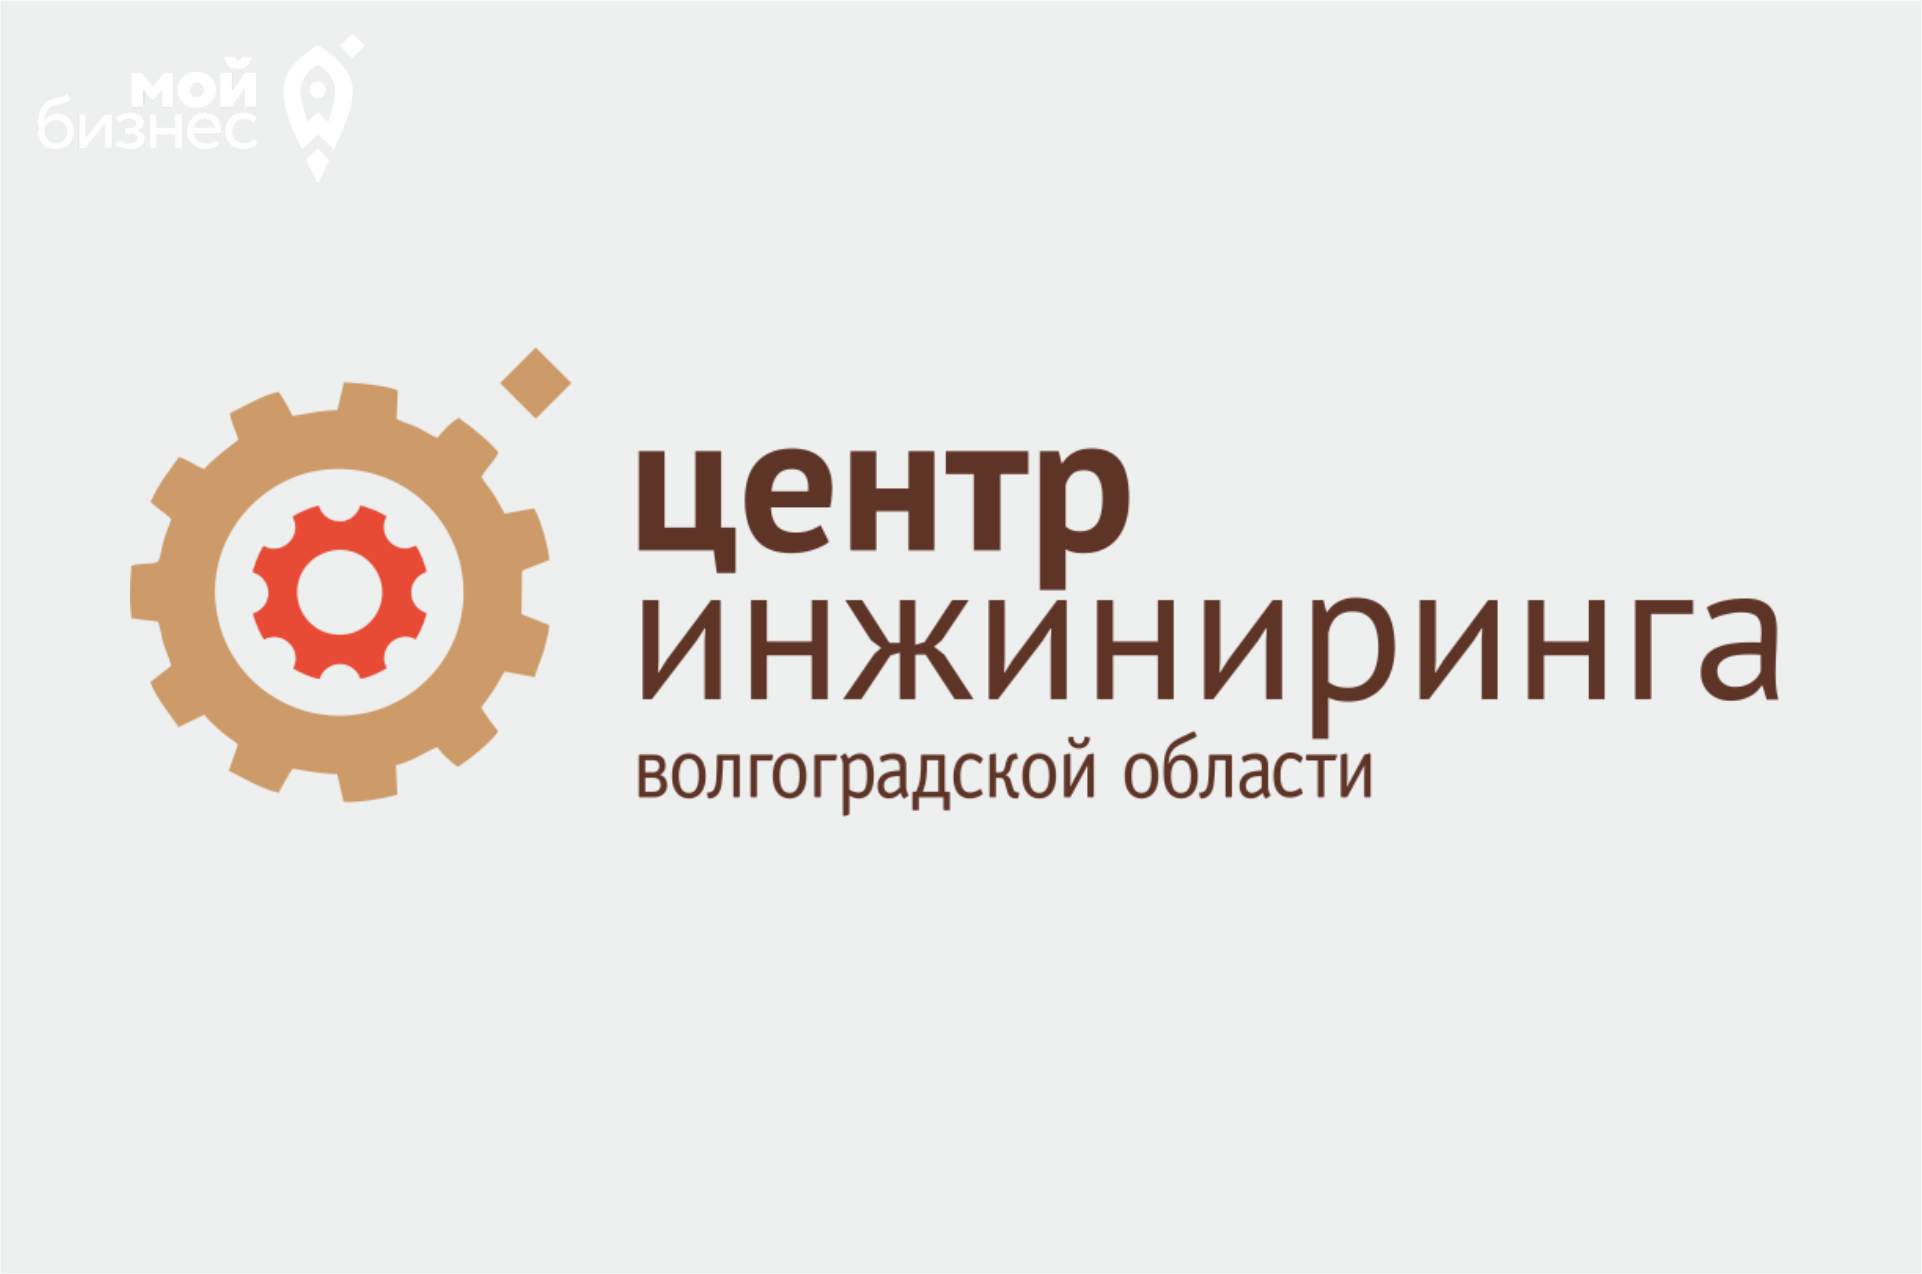 Центр Инжиниринга Волгоградской области ГАУ ВО «Мой бизнес» объявляет сбор заявок на разработку сайтов